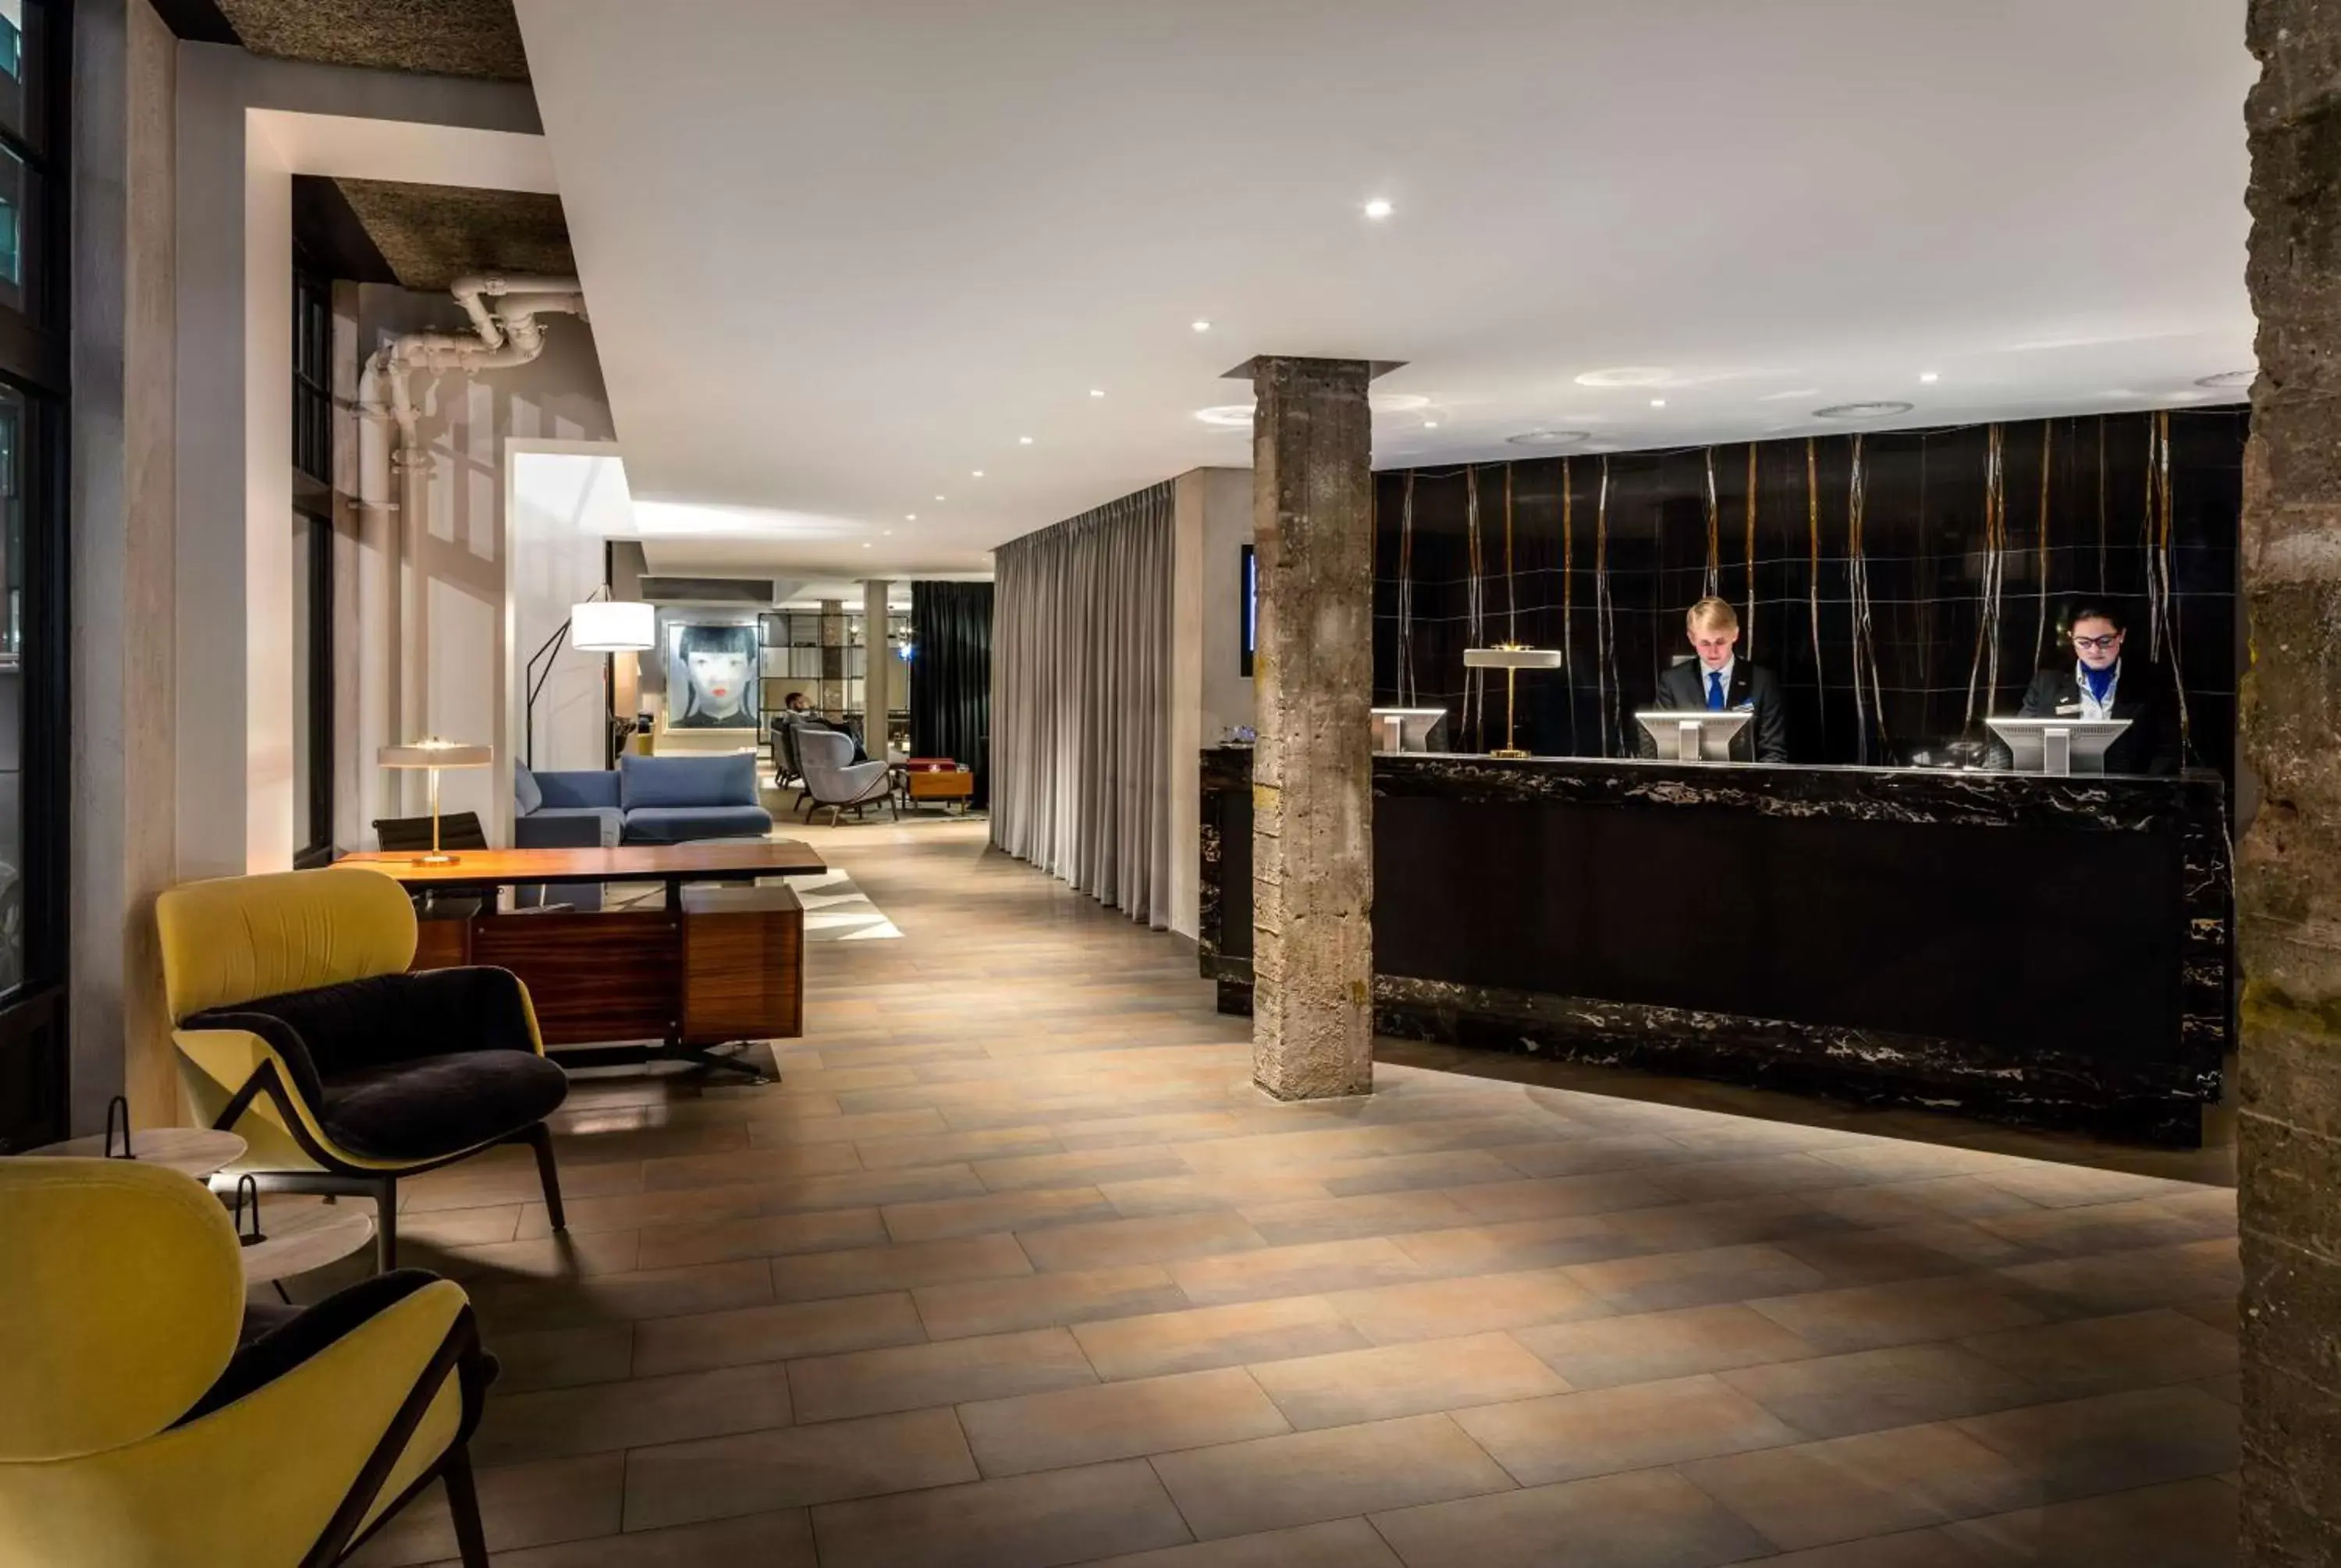 Lobby or reception, Lobby/Reception in Radisson Blu Edwardian Mercer Street Hotel, London